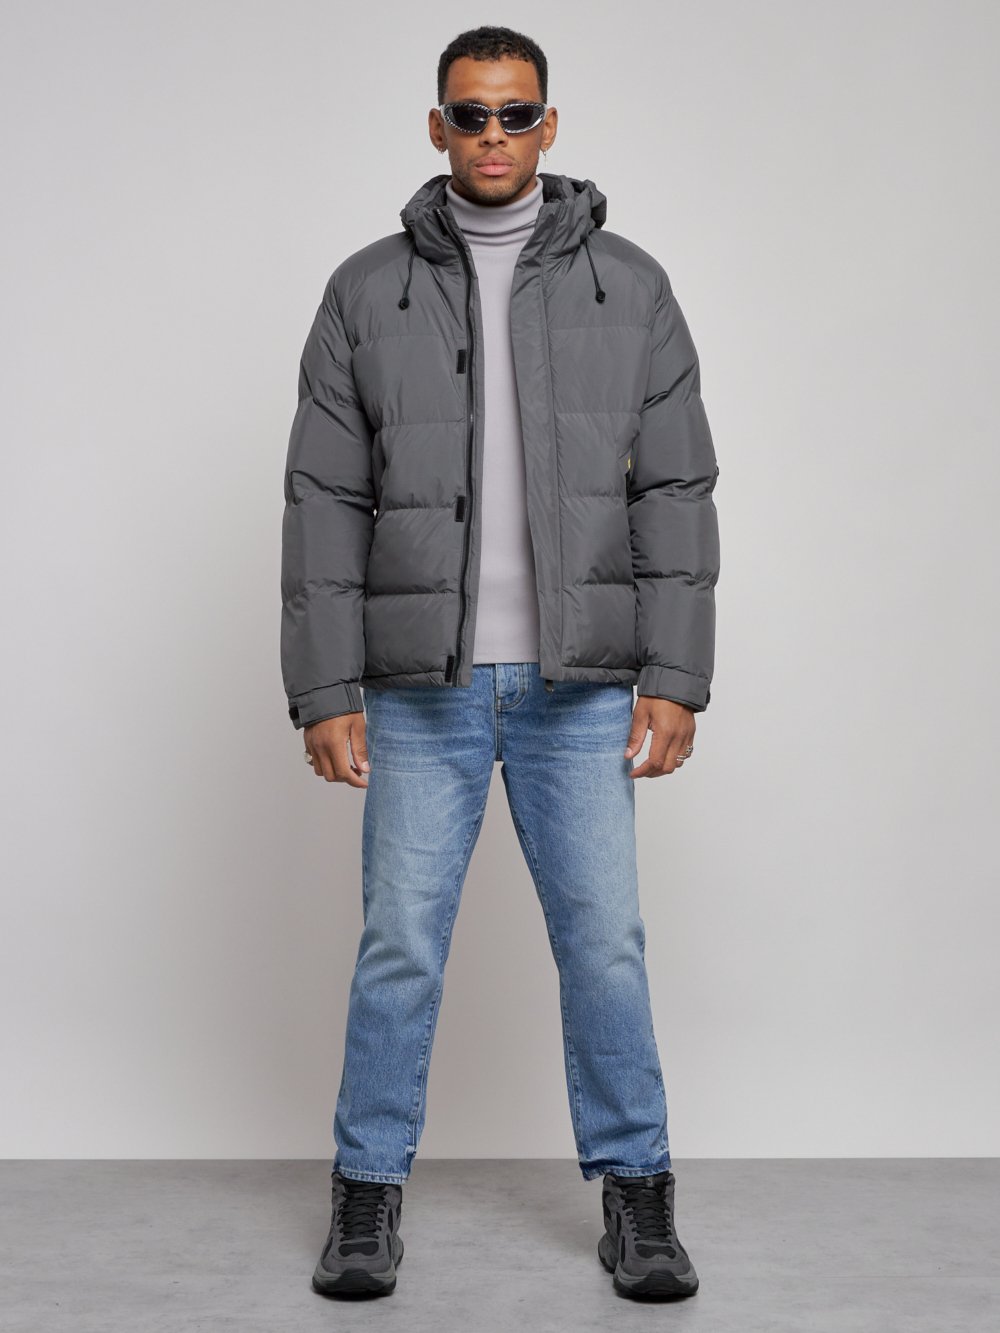 Куртка спортивная болоньевая мужская зимняя с капюшоном серого цвета 3111Sr